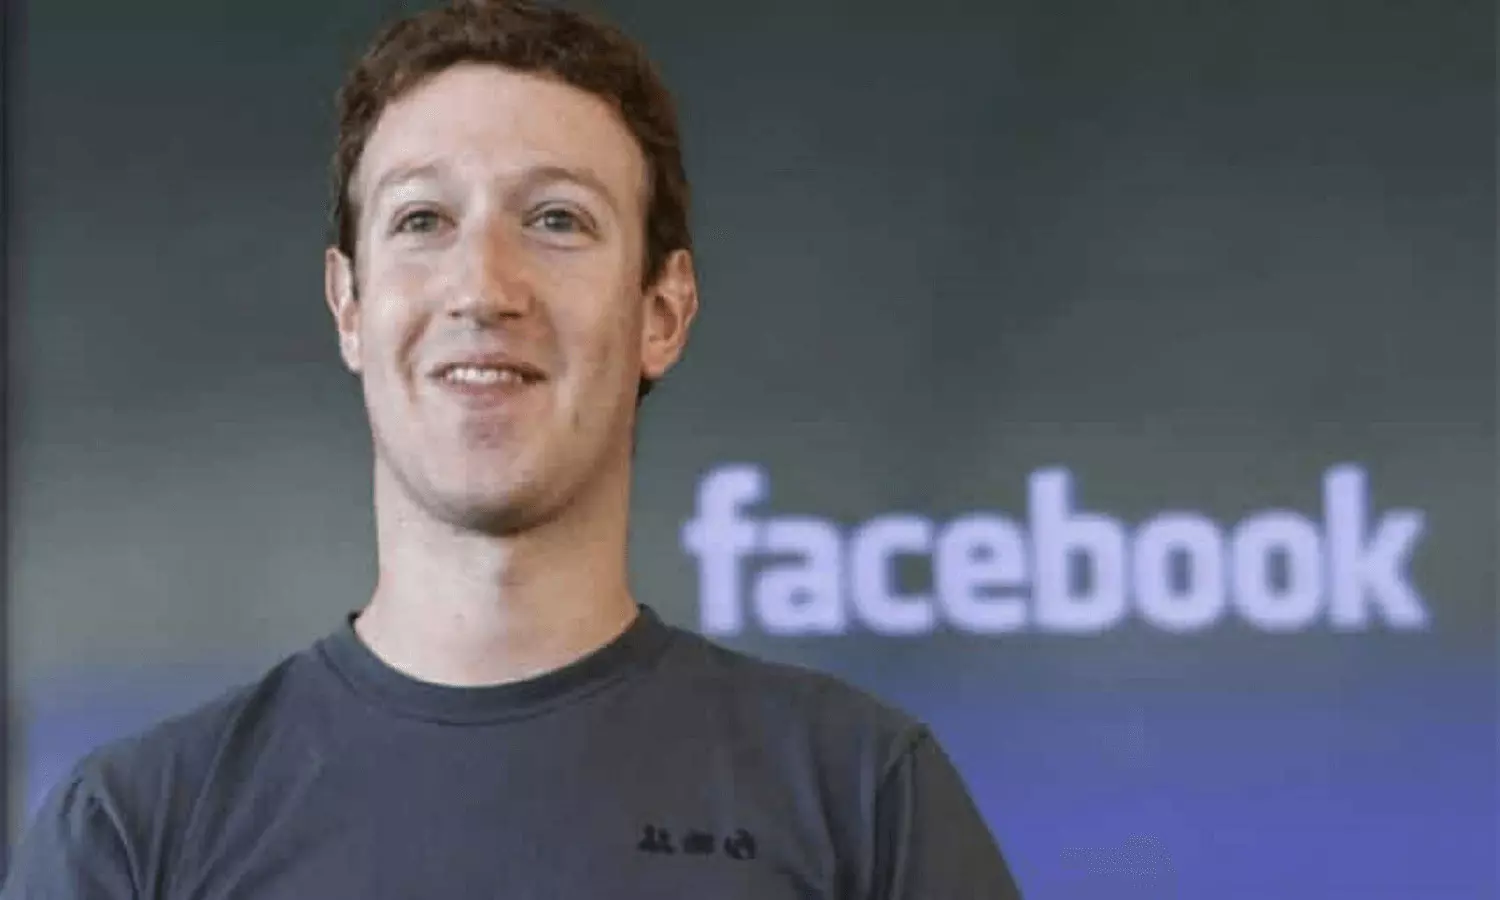 OMG! फेसबुक के सीईओ मार्क जकरबर्ग की सैलरी महज 75 रुपये! लेकिन सुरक्षा पर खर्च अरबों रुपये